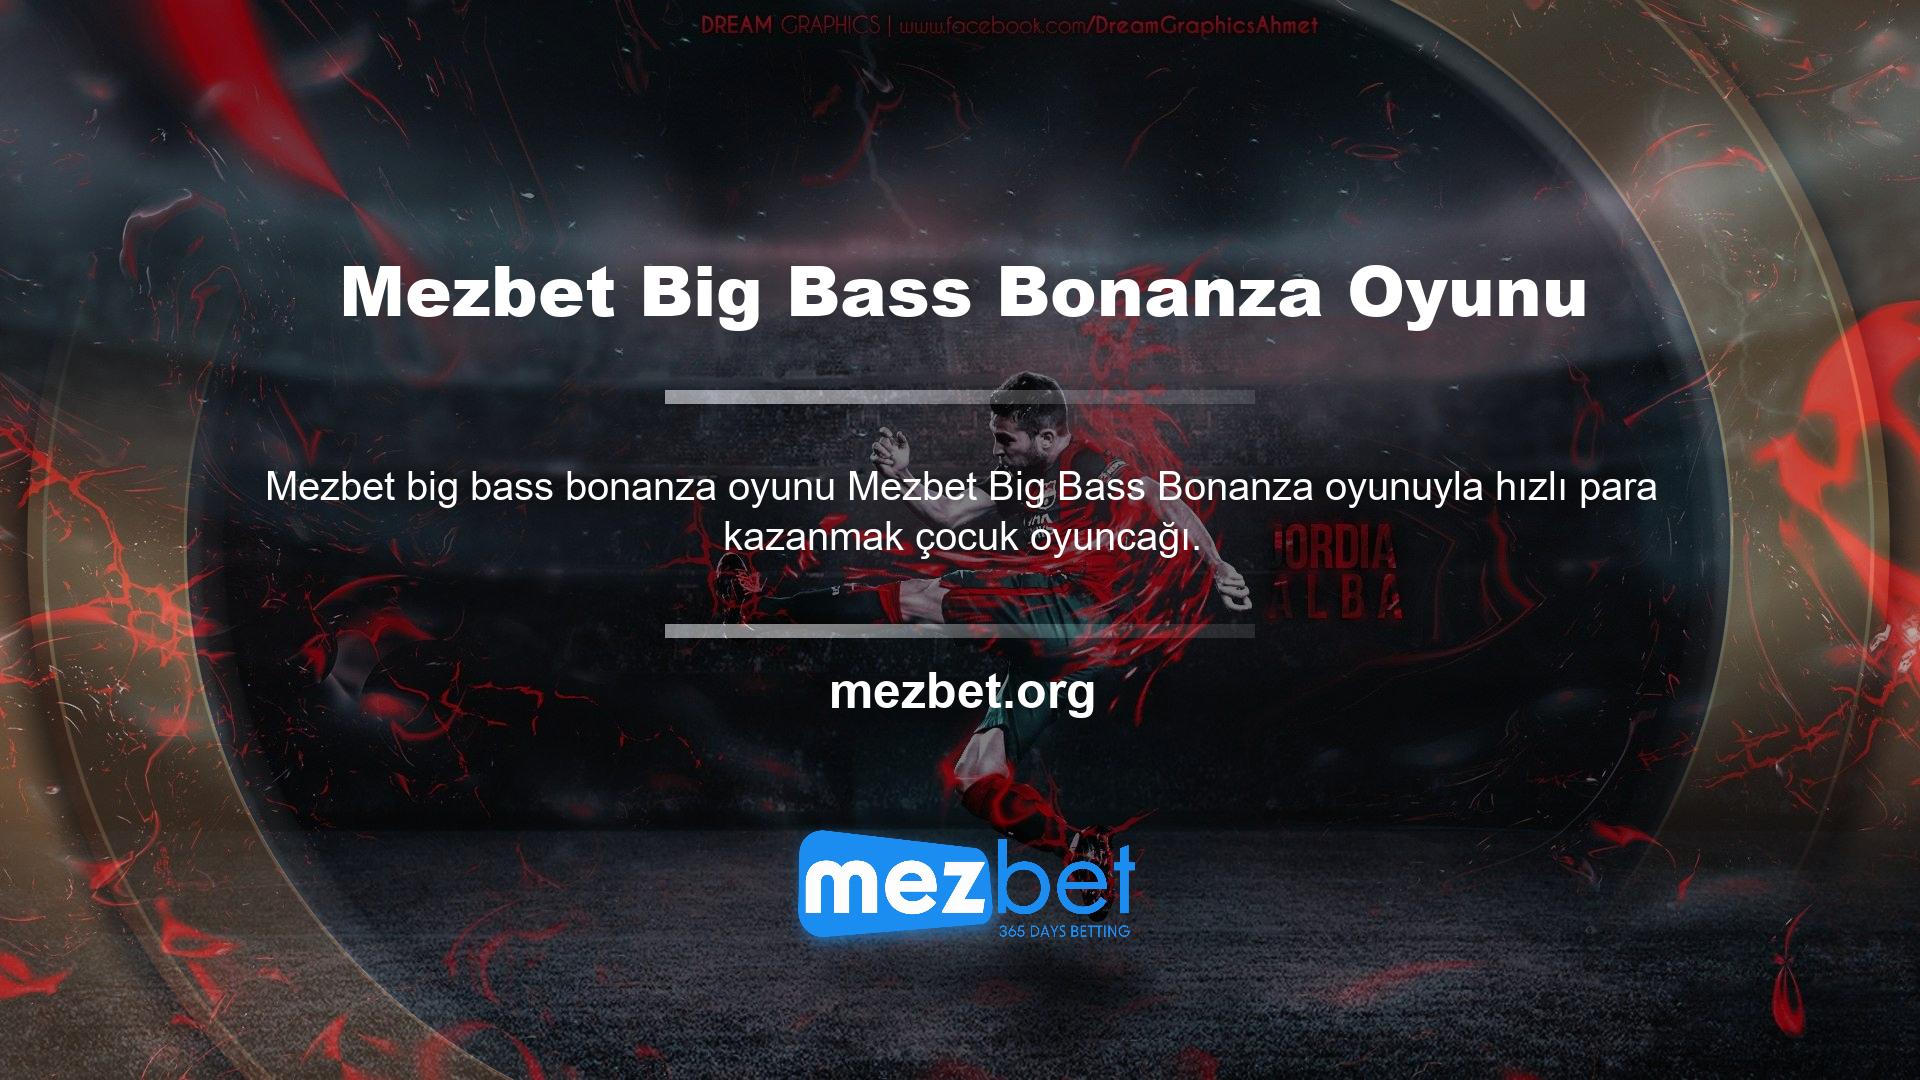 Mezbet Big Bass Bonanza oyunu aslında basittir